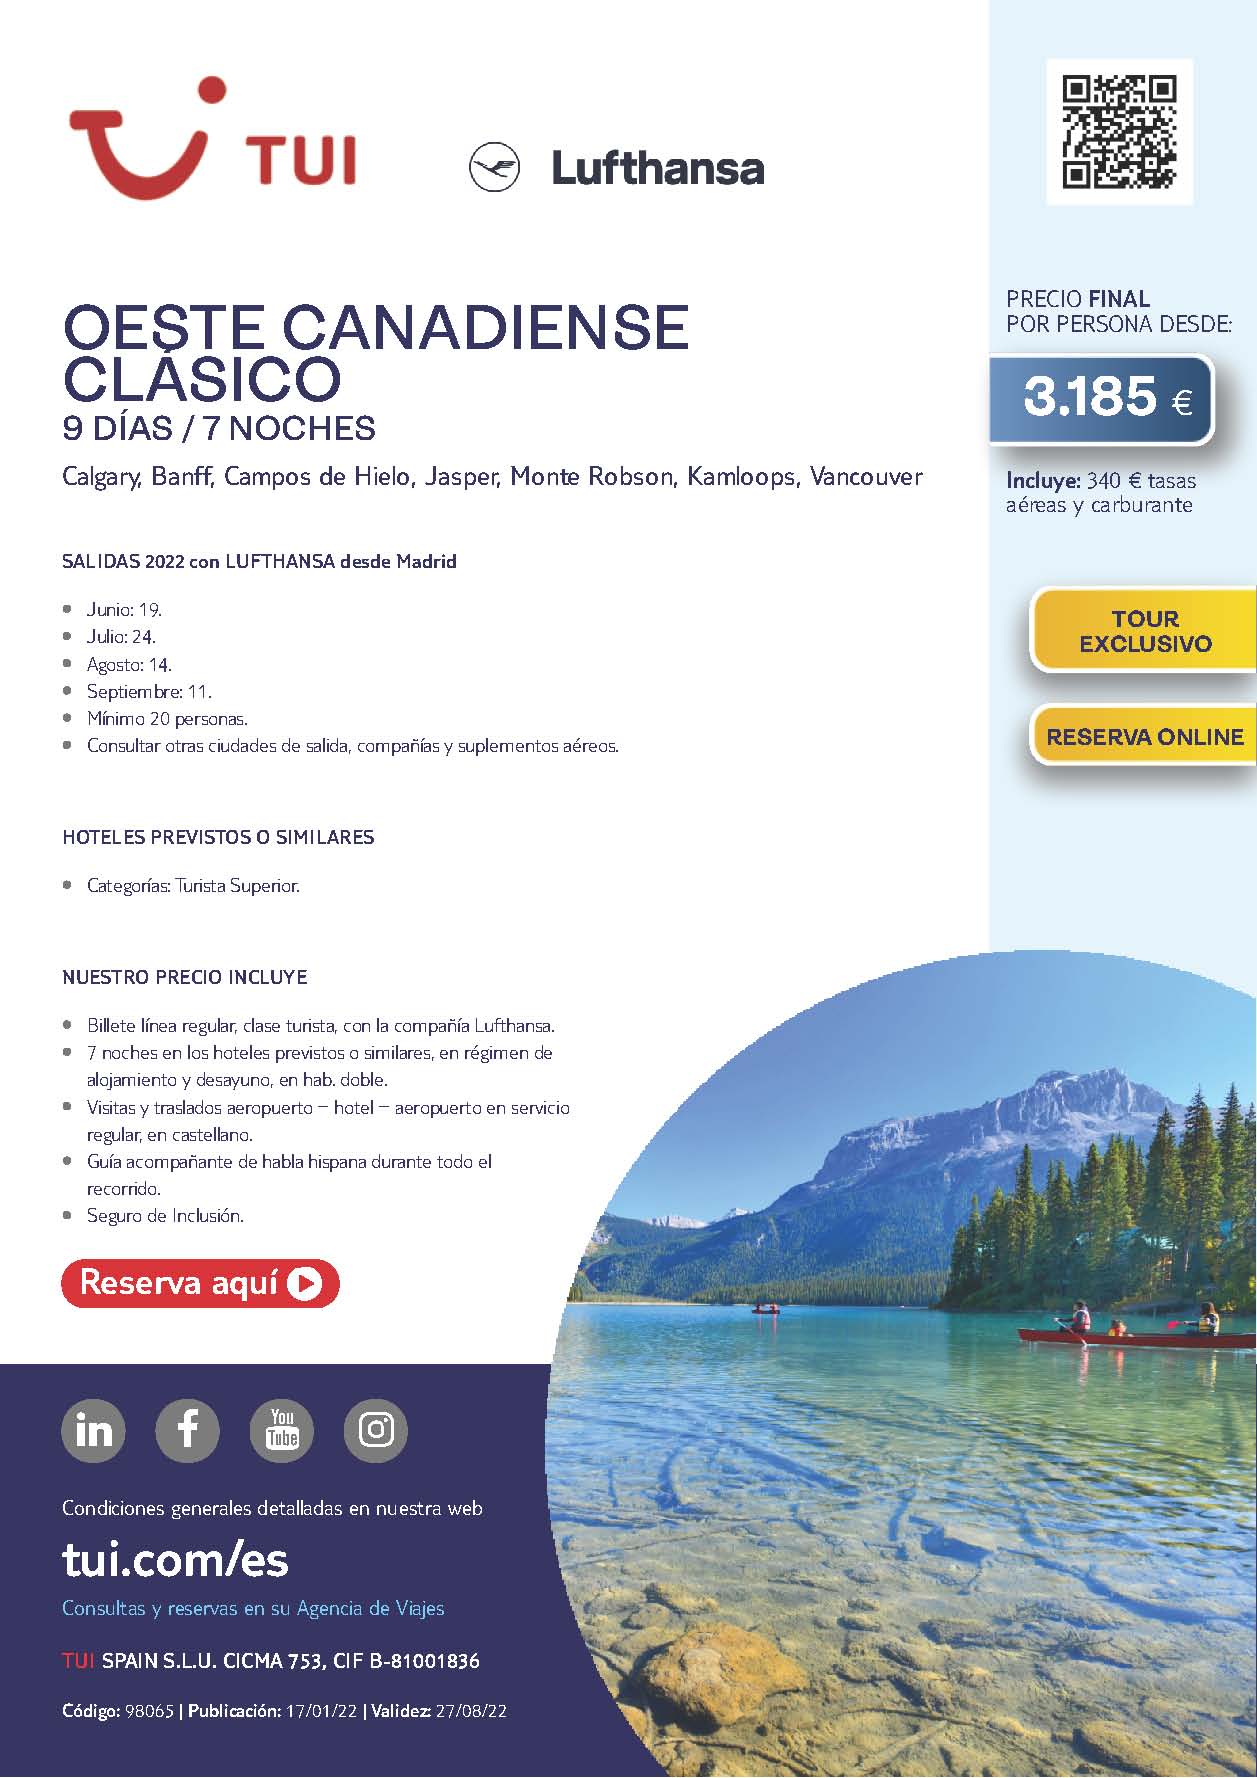 Oferta TUI Canada Oeste Canadiense Clasico 9 dias Junio a Septiembre 2022 salidas desde Madrid vuelos Lufthansa